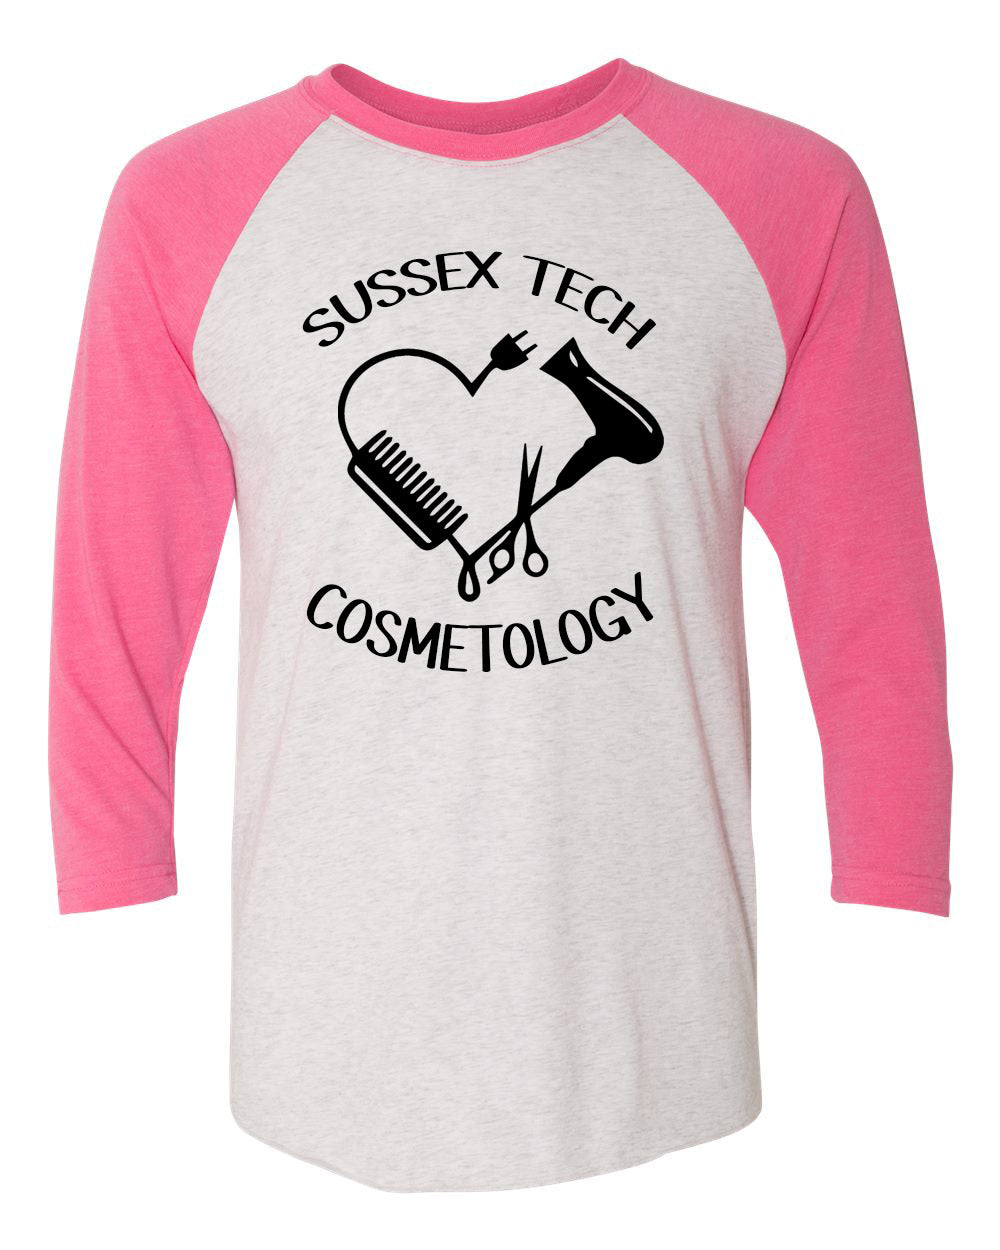 Senior Cosmetology design 2 raglan shirt